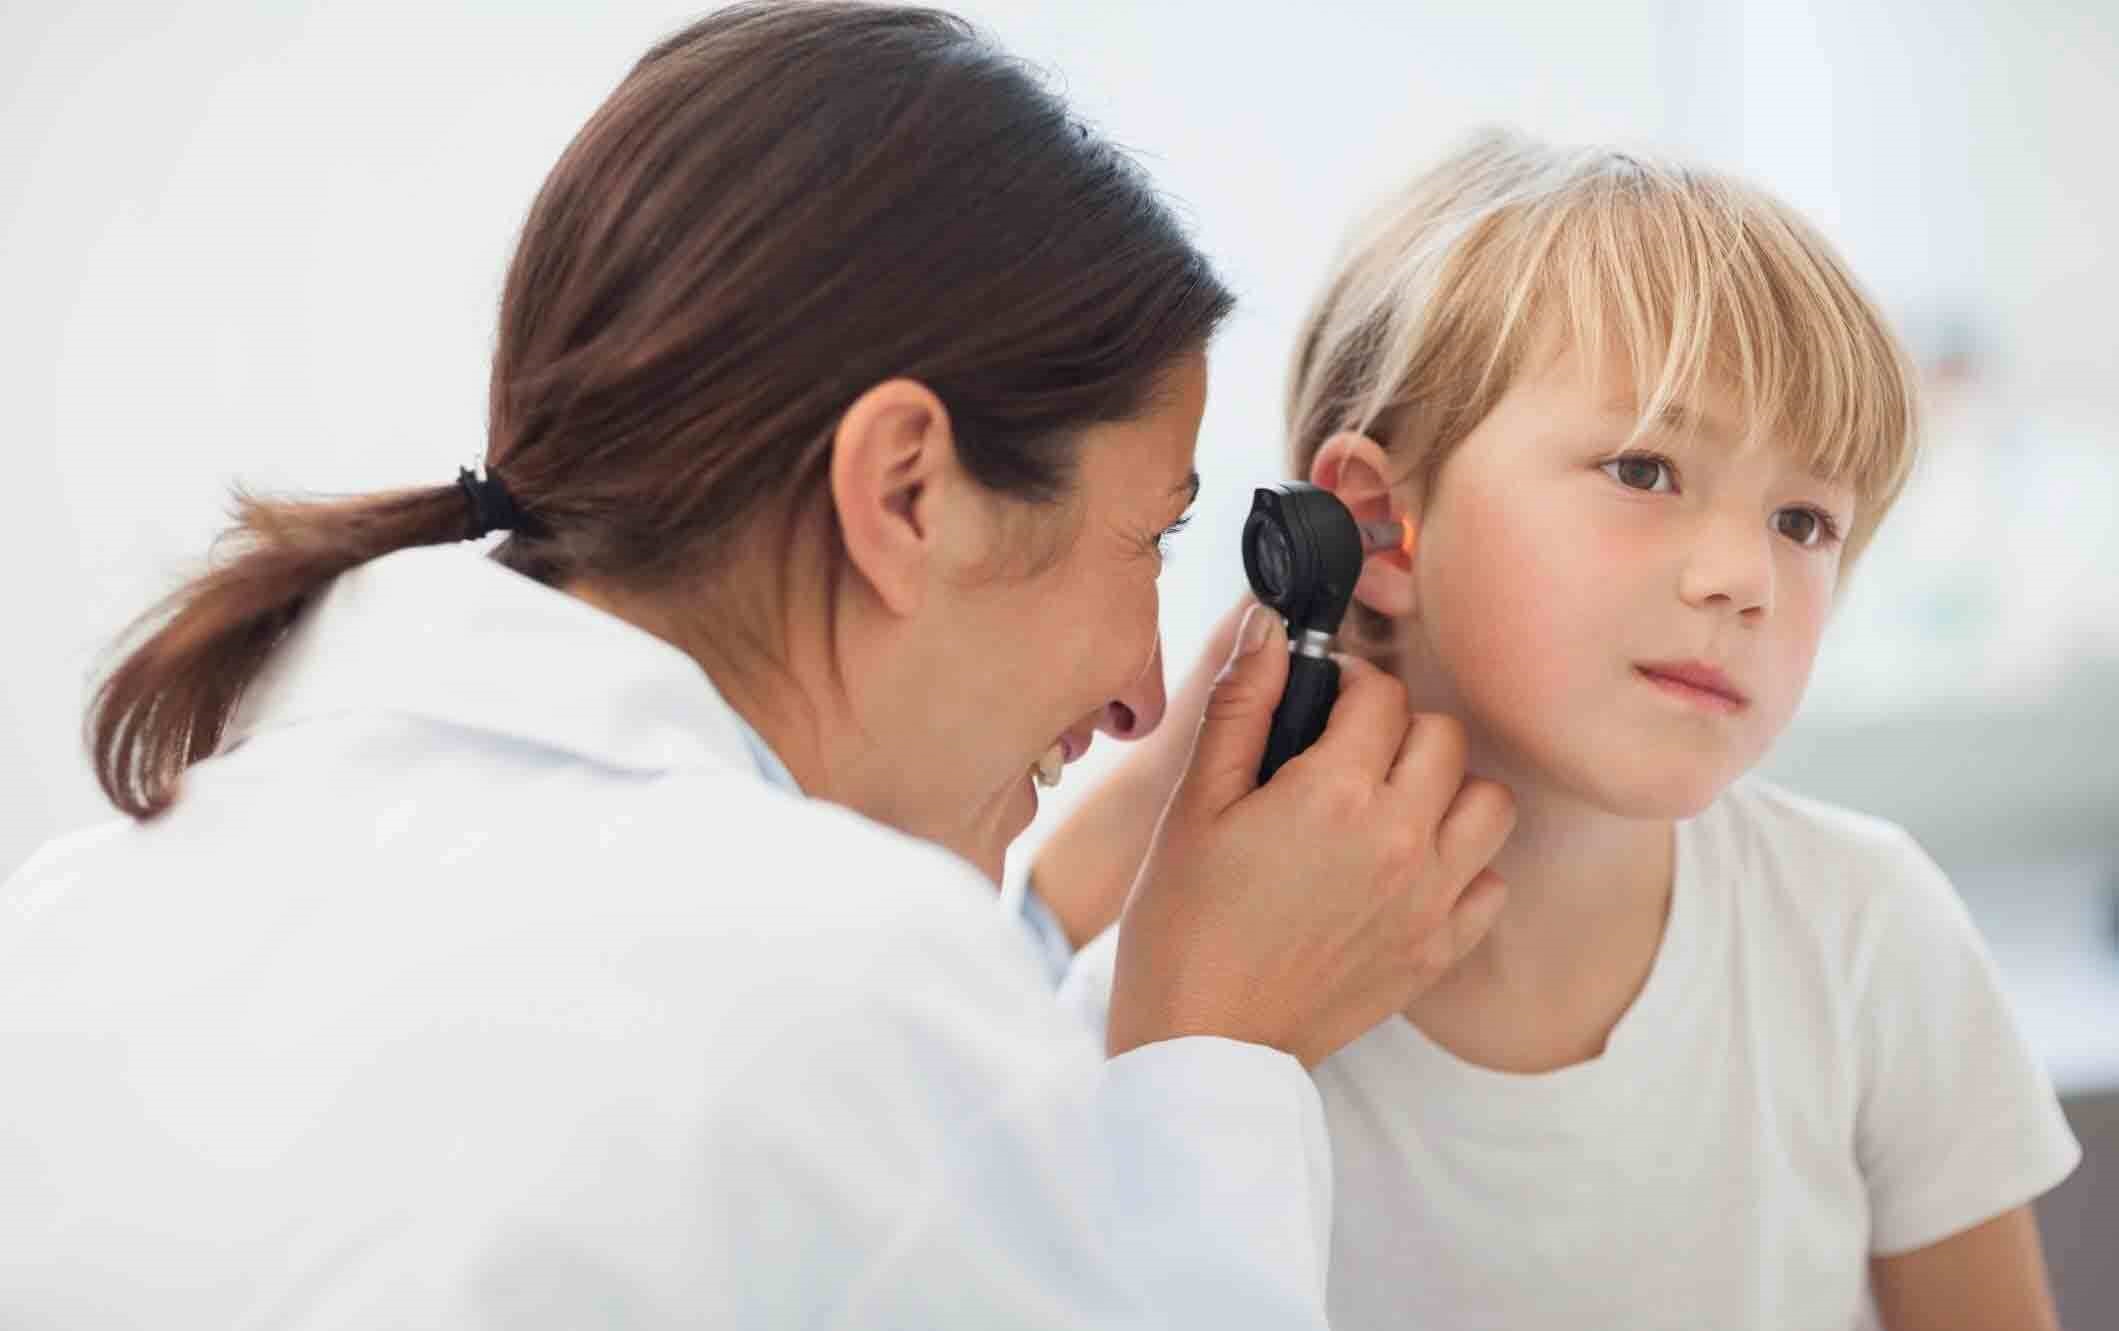 معاینه ی گوش - درمان گوش درد در خانه